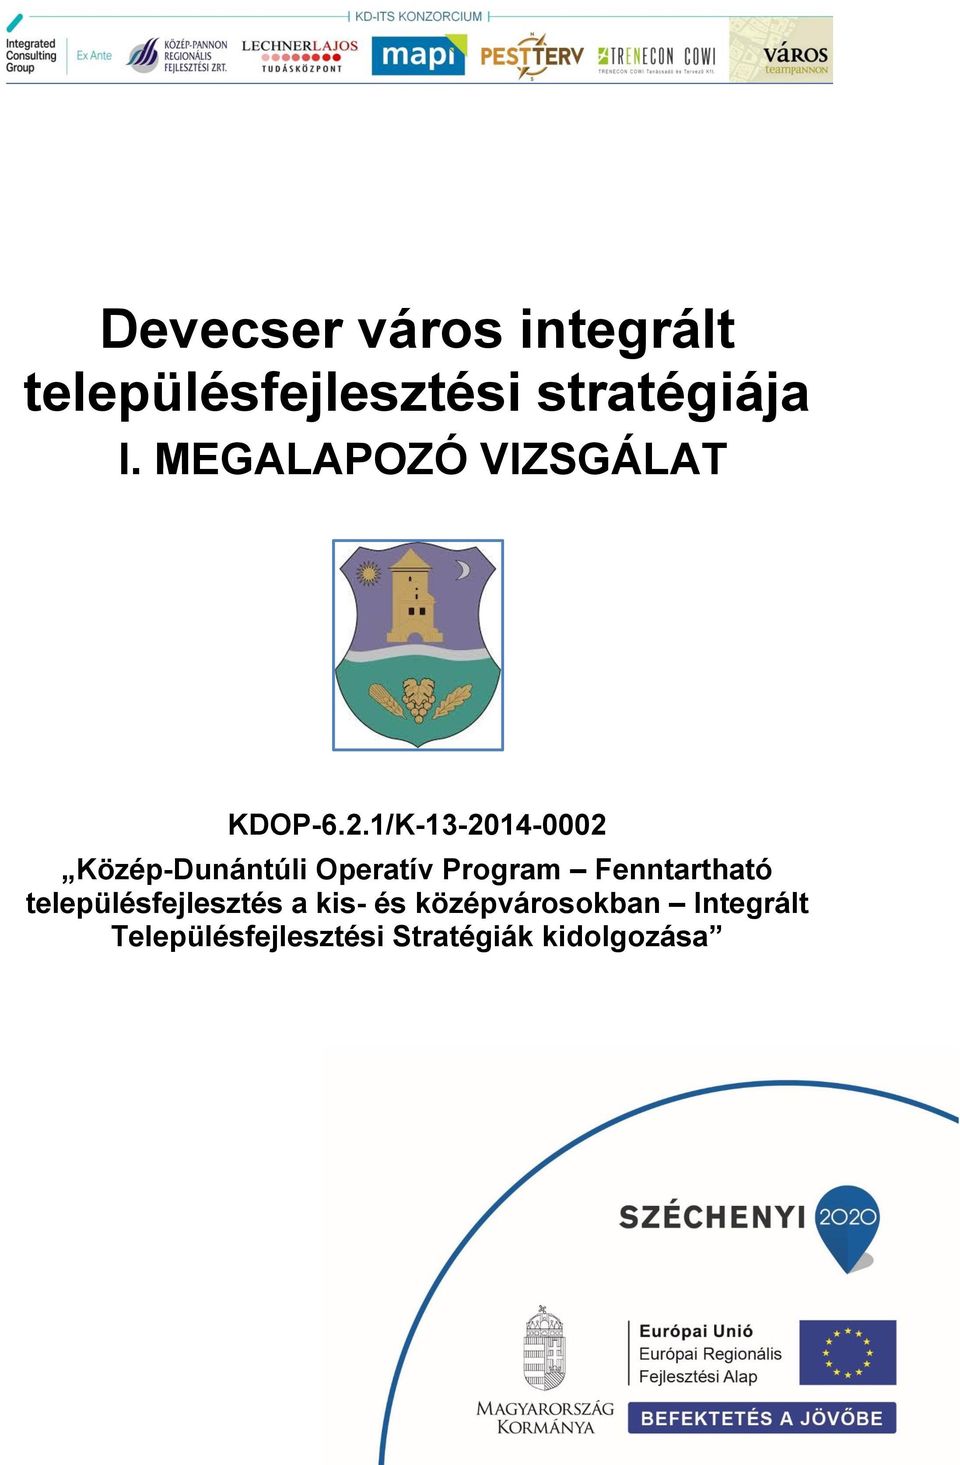 1/K-13-2014-0002 Közép-Dunántúli Operatív Program Fenntartható